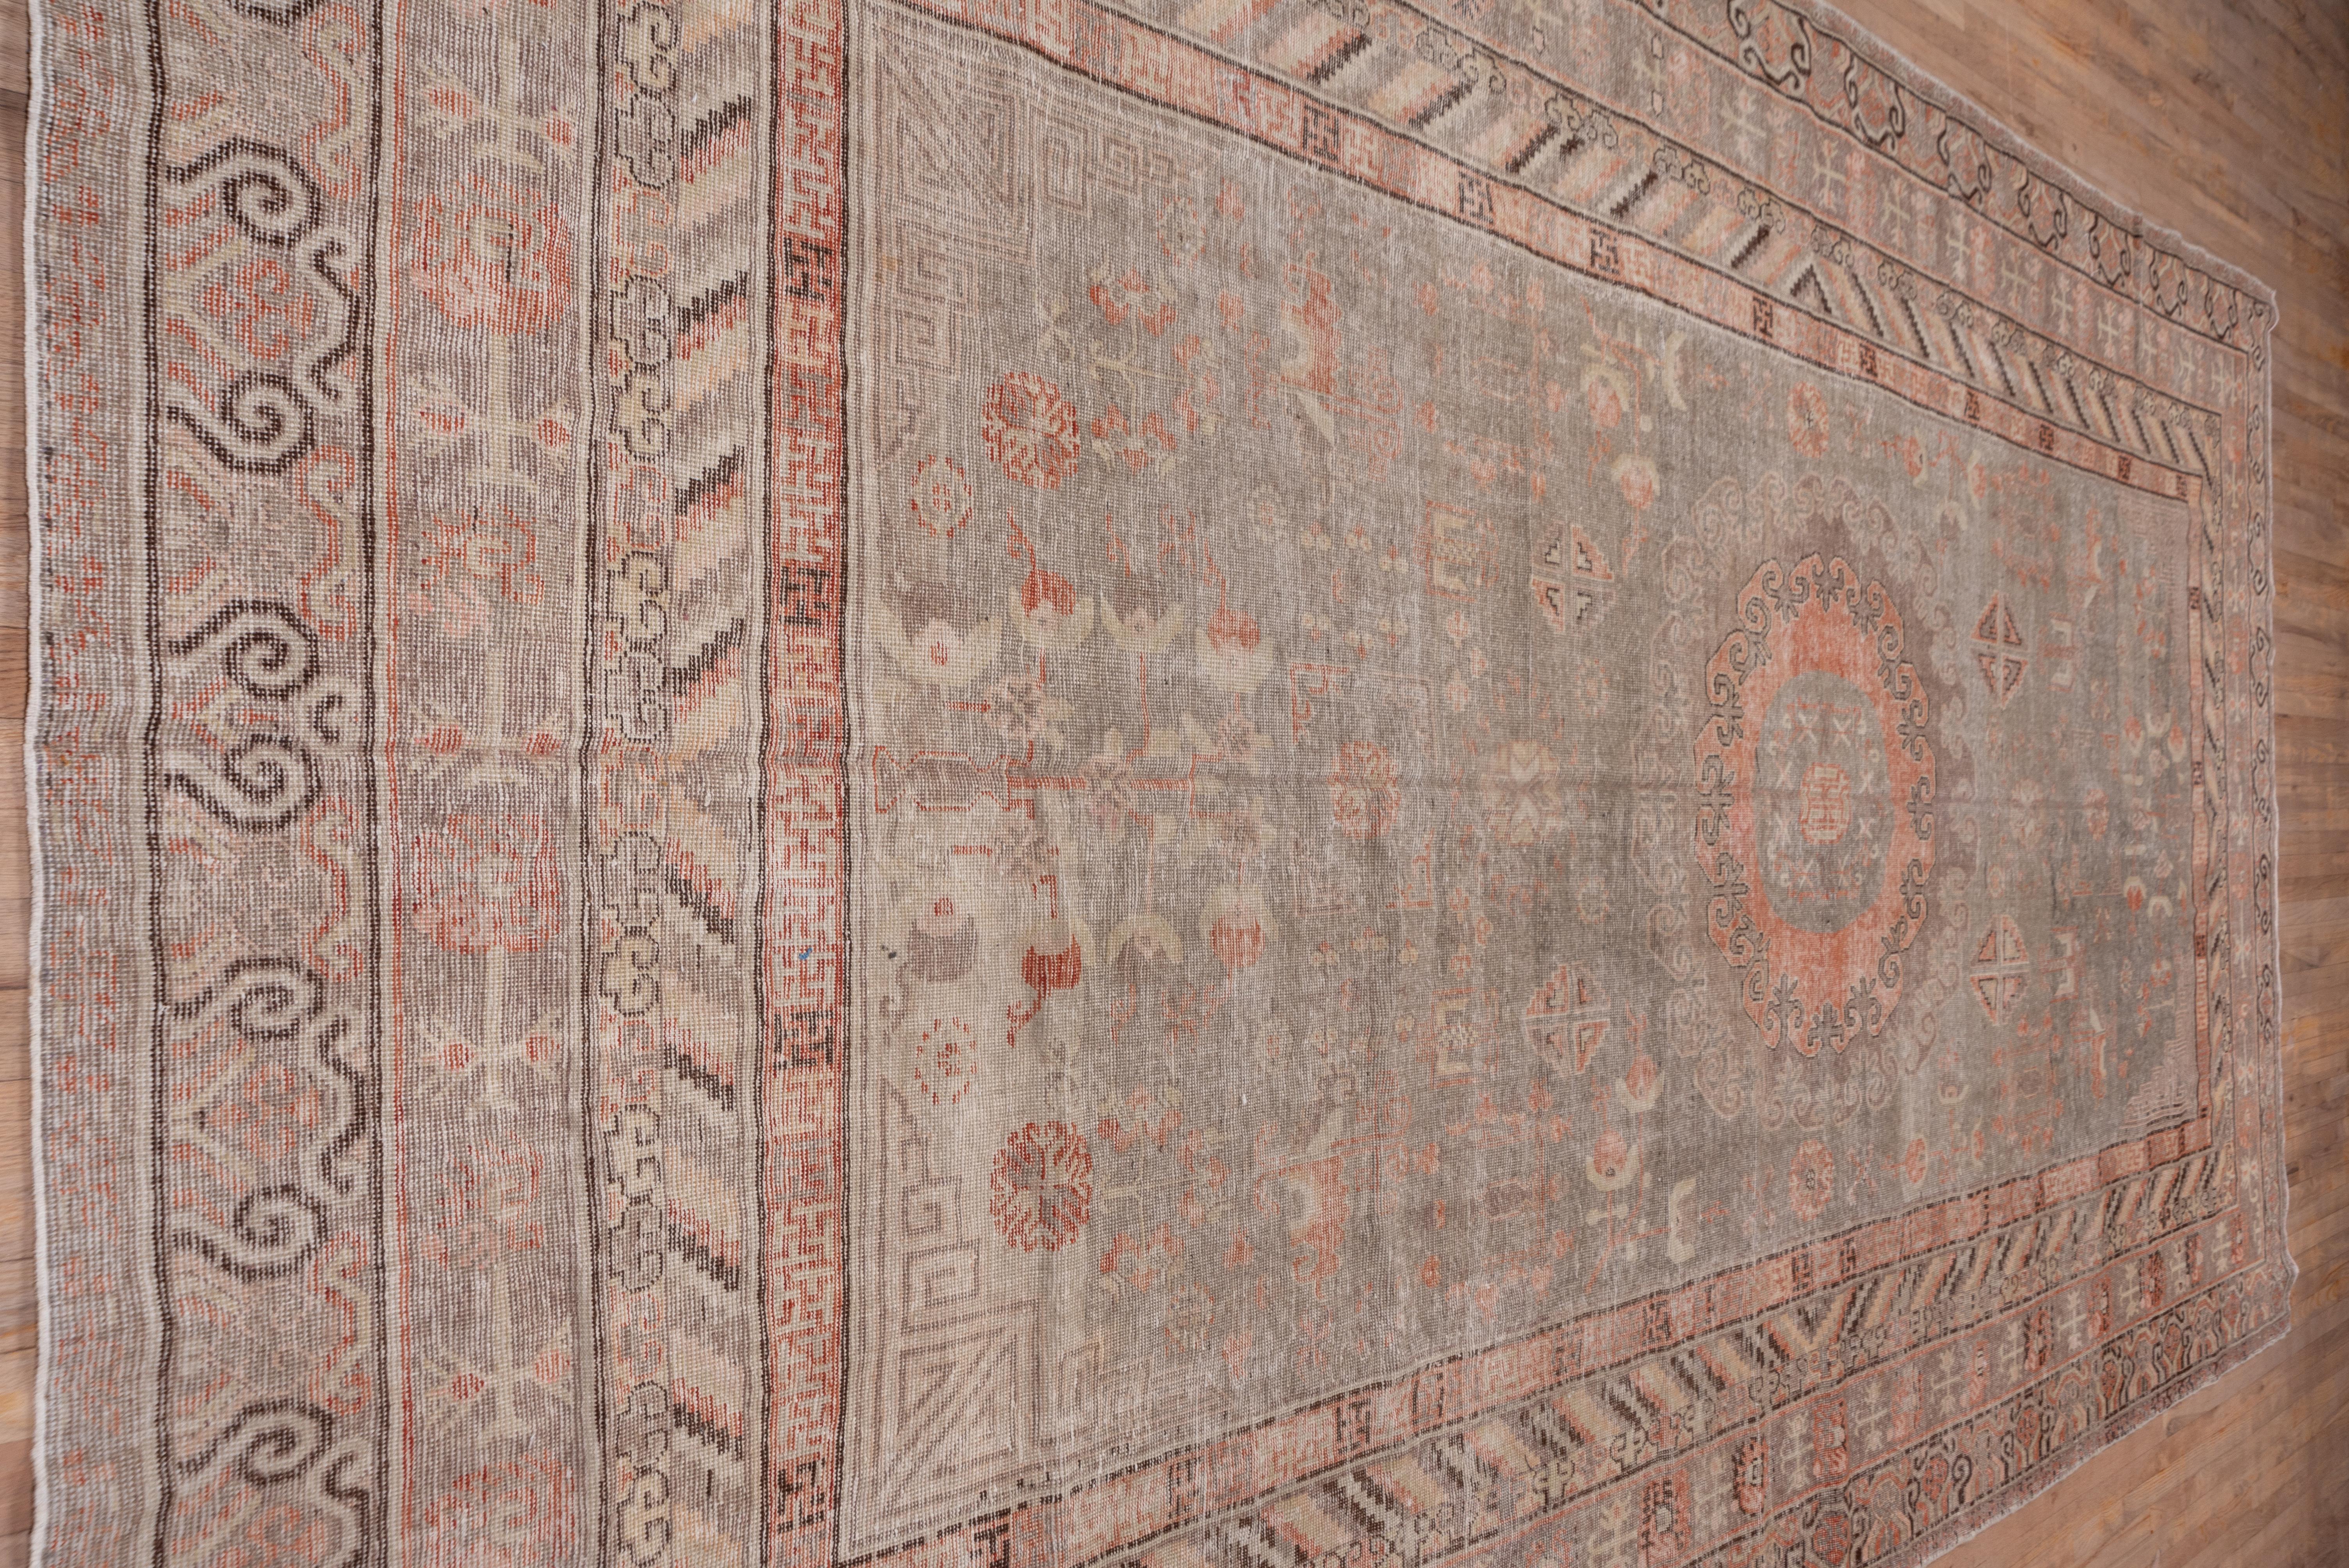 Dieser sanft getönte Oasenstadtteppich aus Xinjiang zeichnet sich durch ein doppeltes konzentrisches Rundmedaillon mit reziprokem Rand auf dem chamoisfarbenen Grund aus. Bundecken im chinesischen Stil, kleine geteilte Oktogone und gebogene Blätter